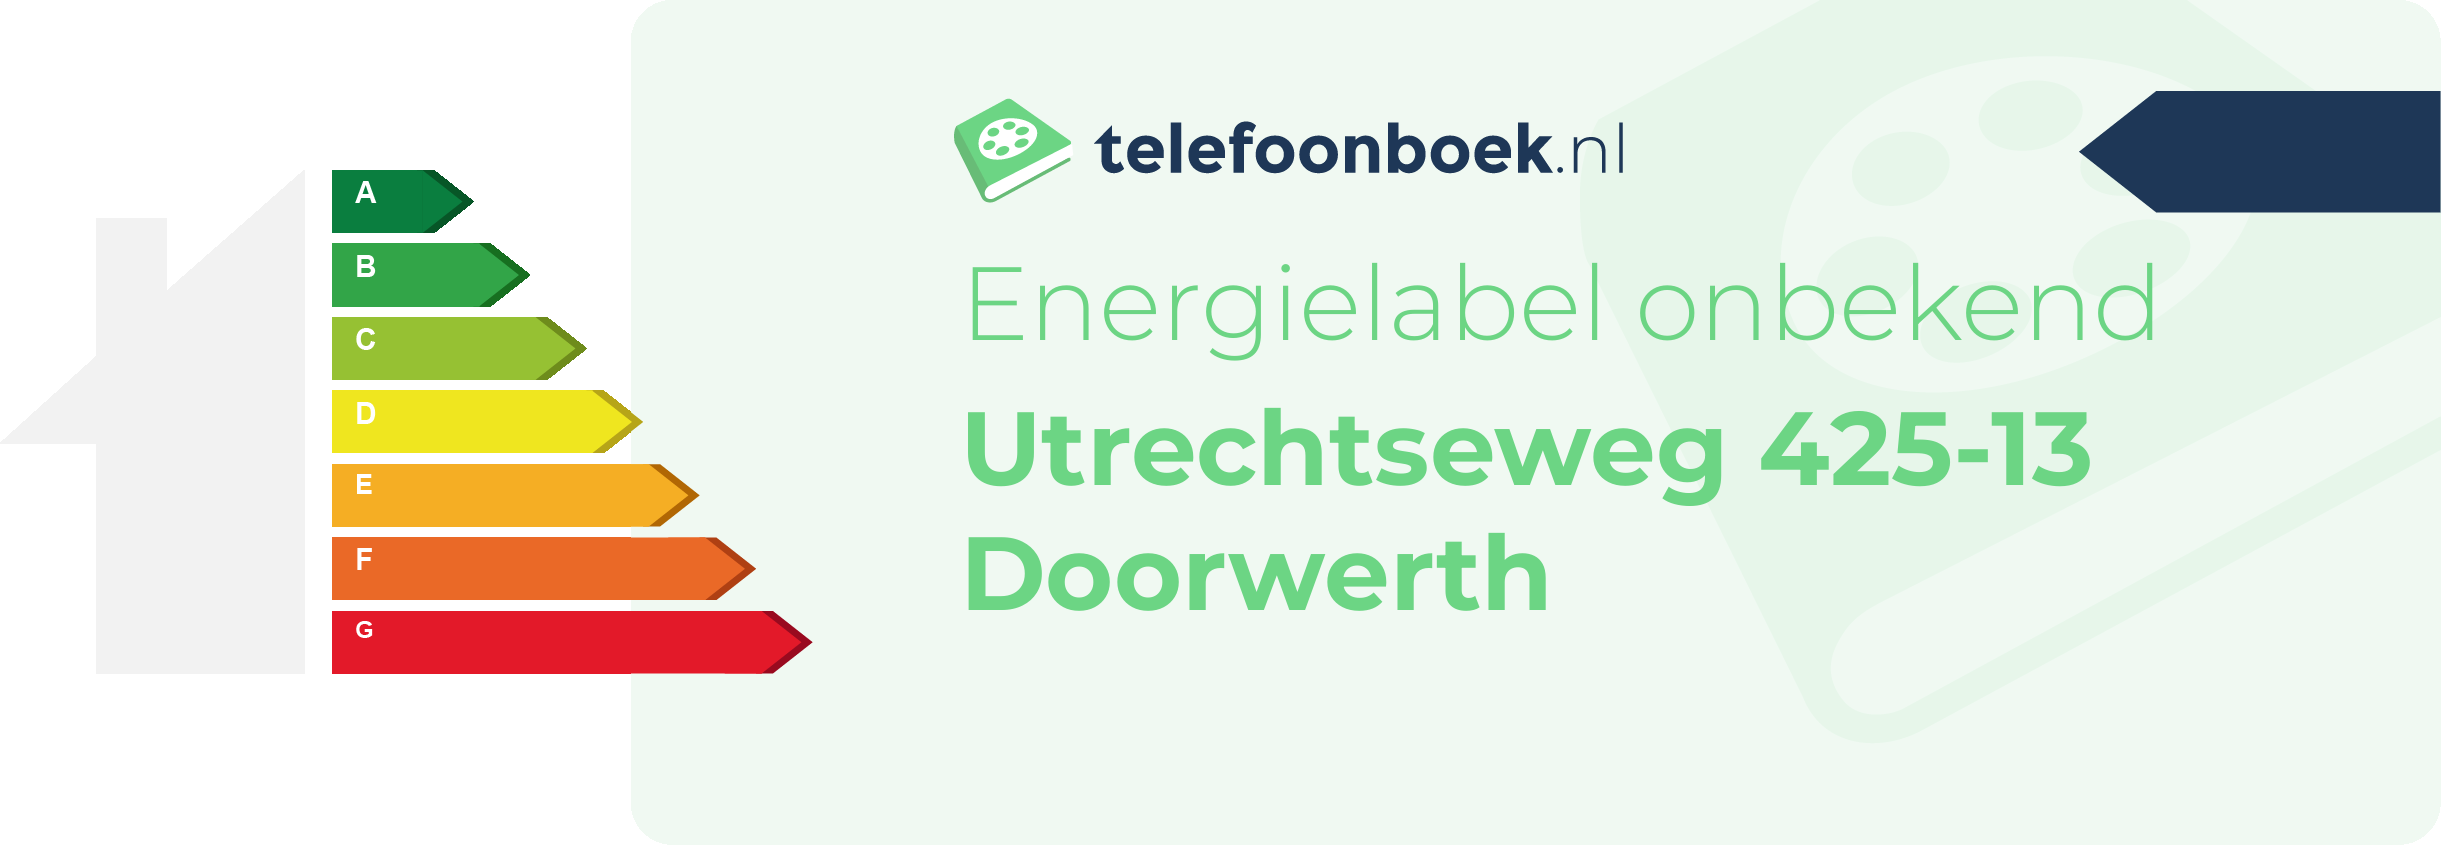 Energielabel Utrechtseweg 425-13 Doorwerth